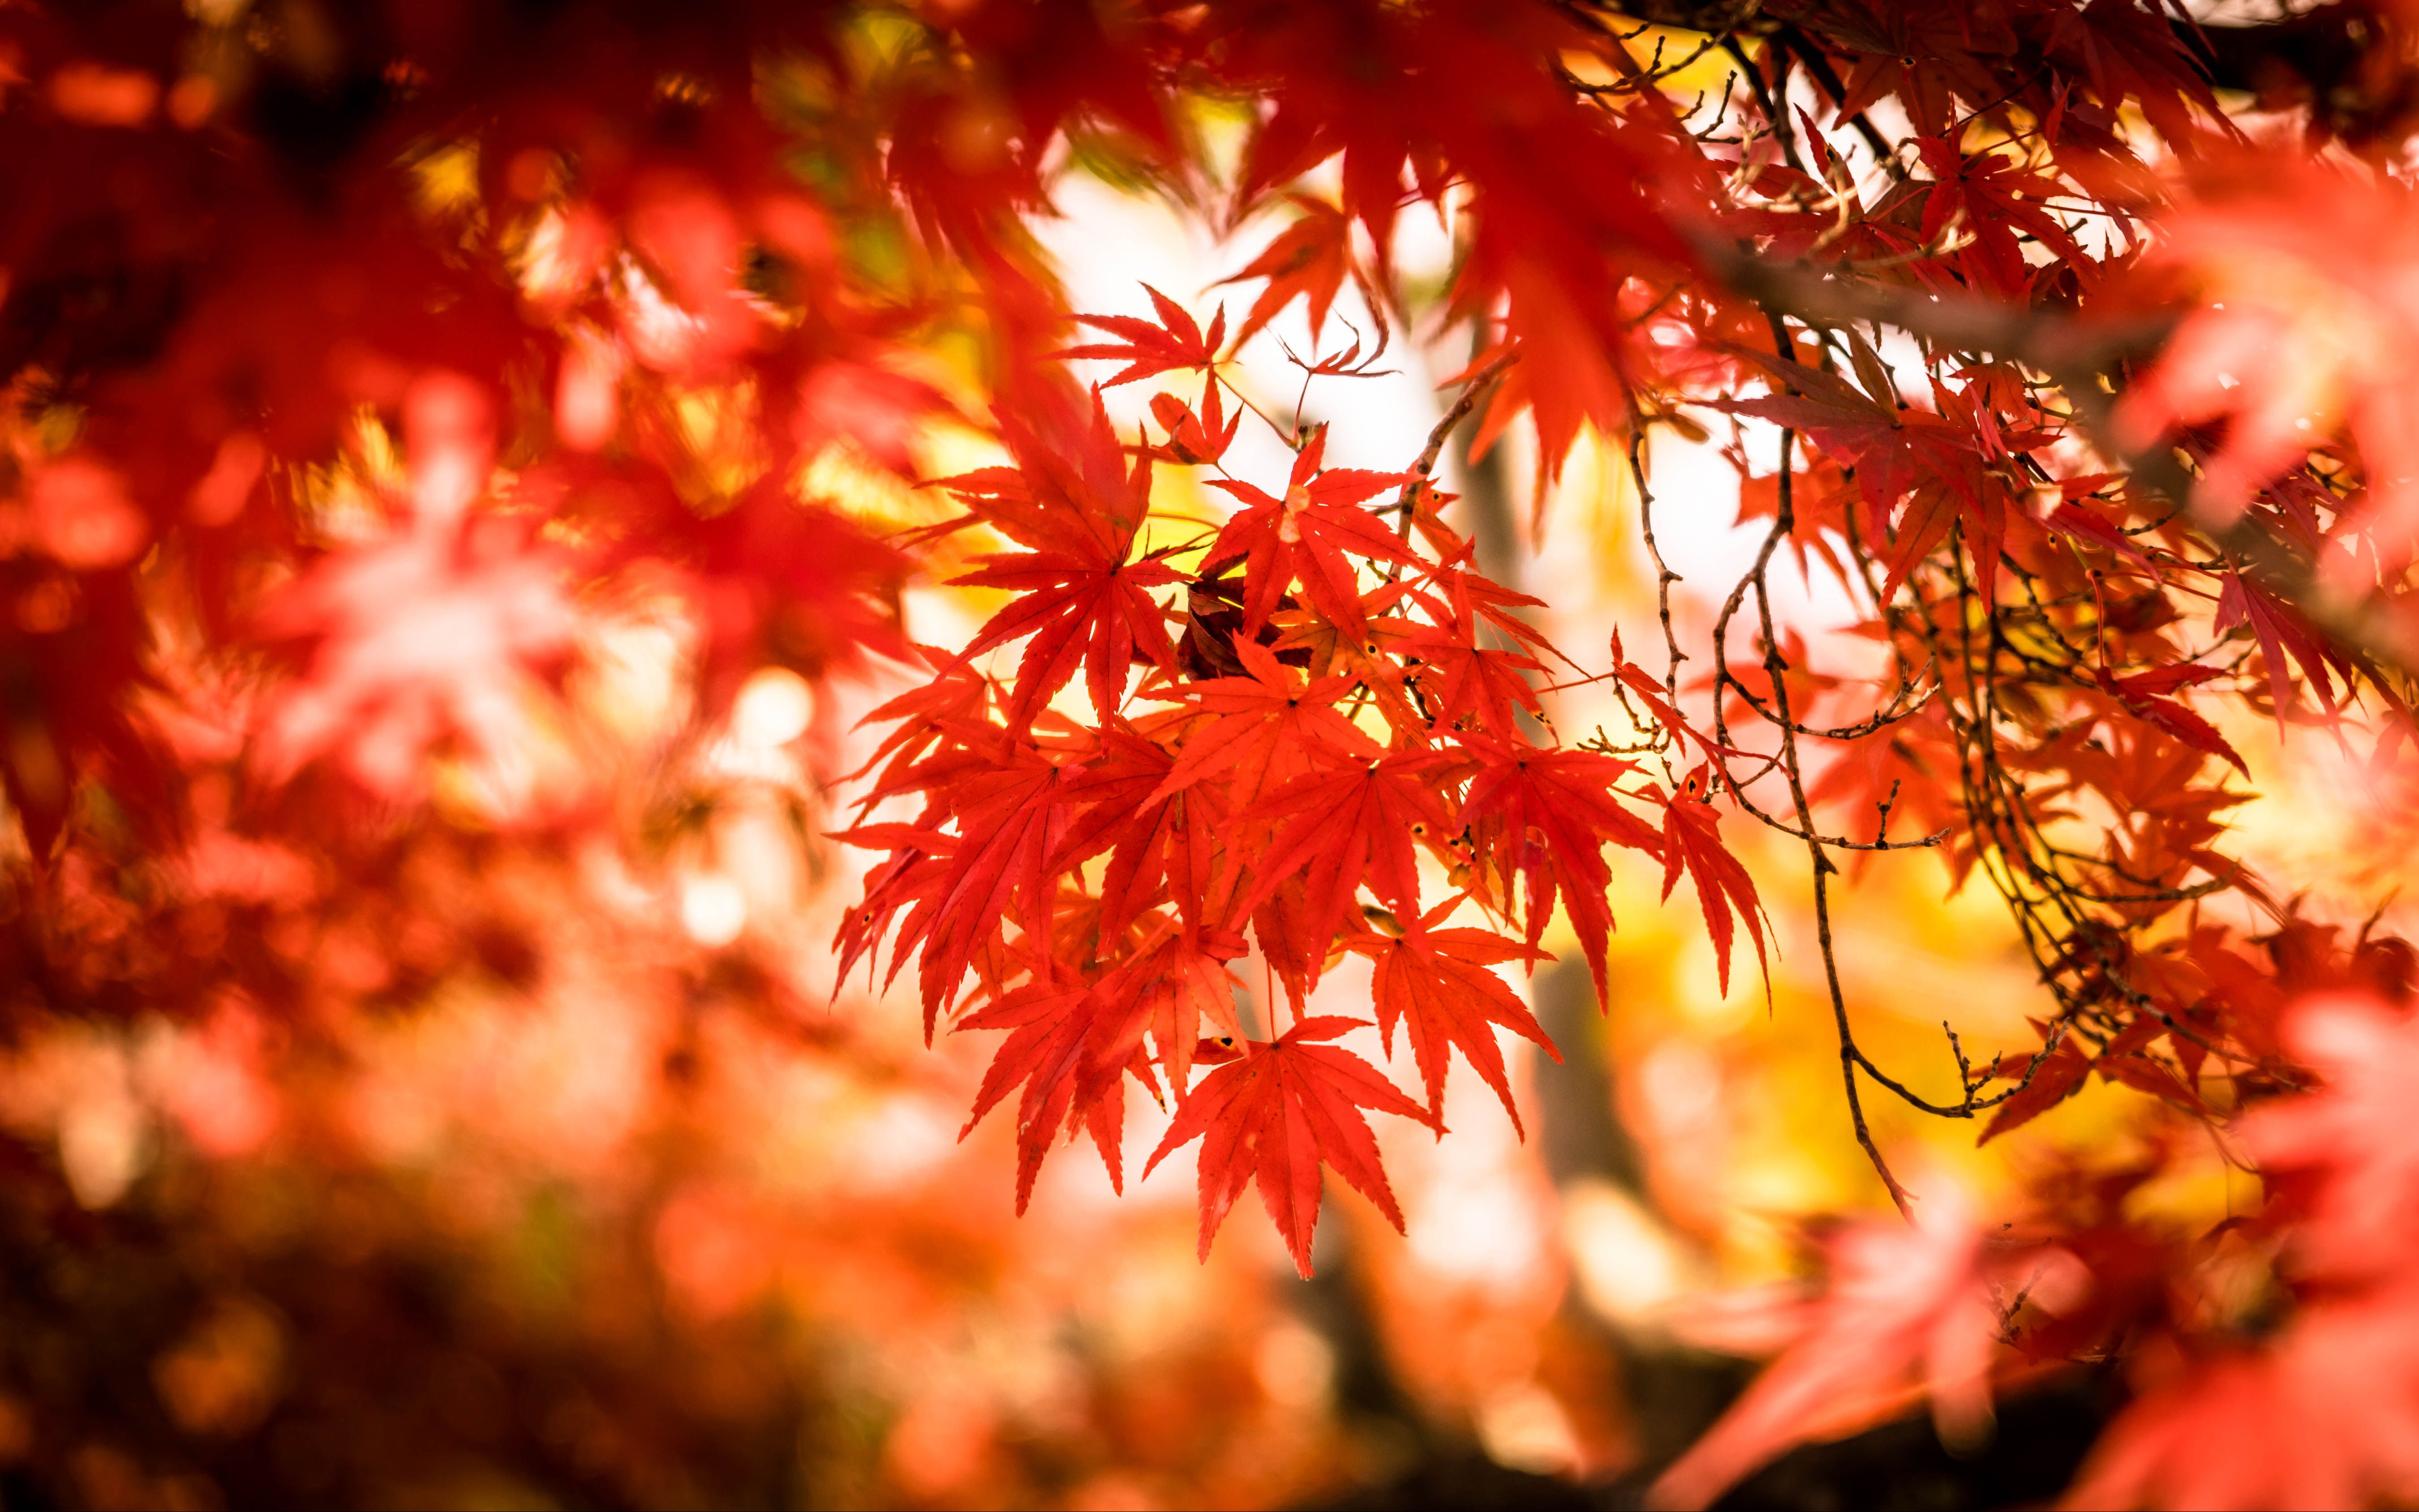 京都体验“红叶狩” 远眺古寺燃焰 近观碧池染红 - 走遍中国旅游网 走遍世界 情之旅